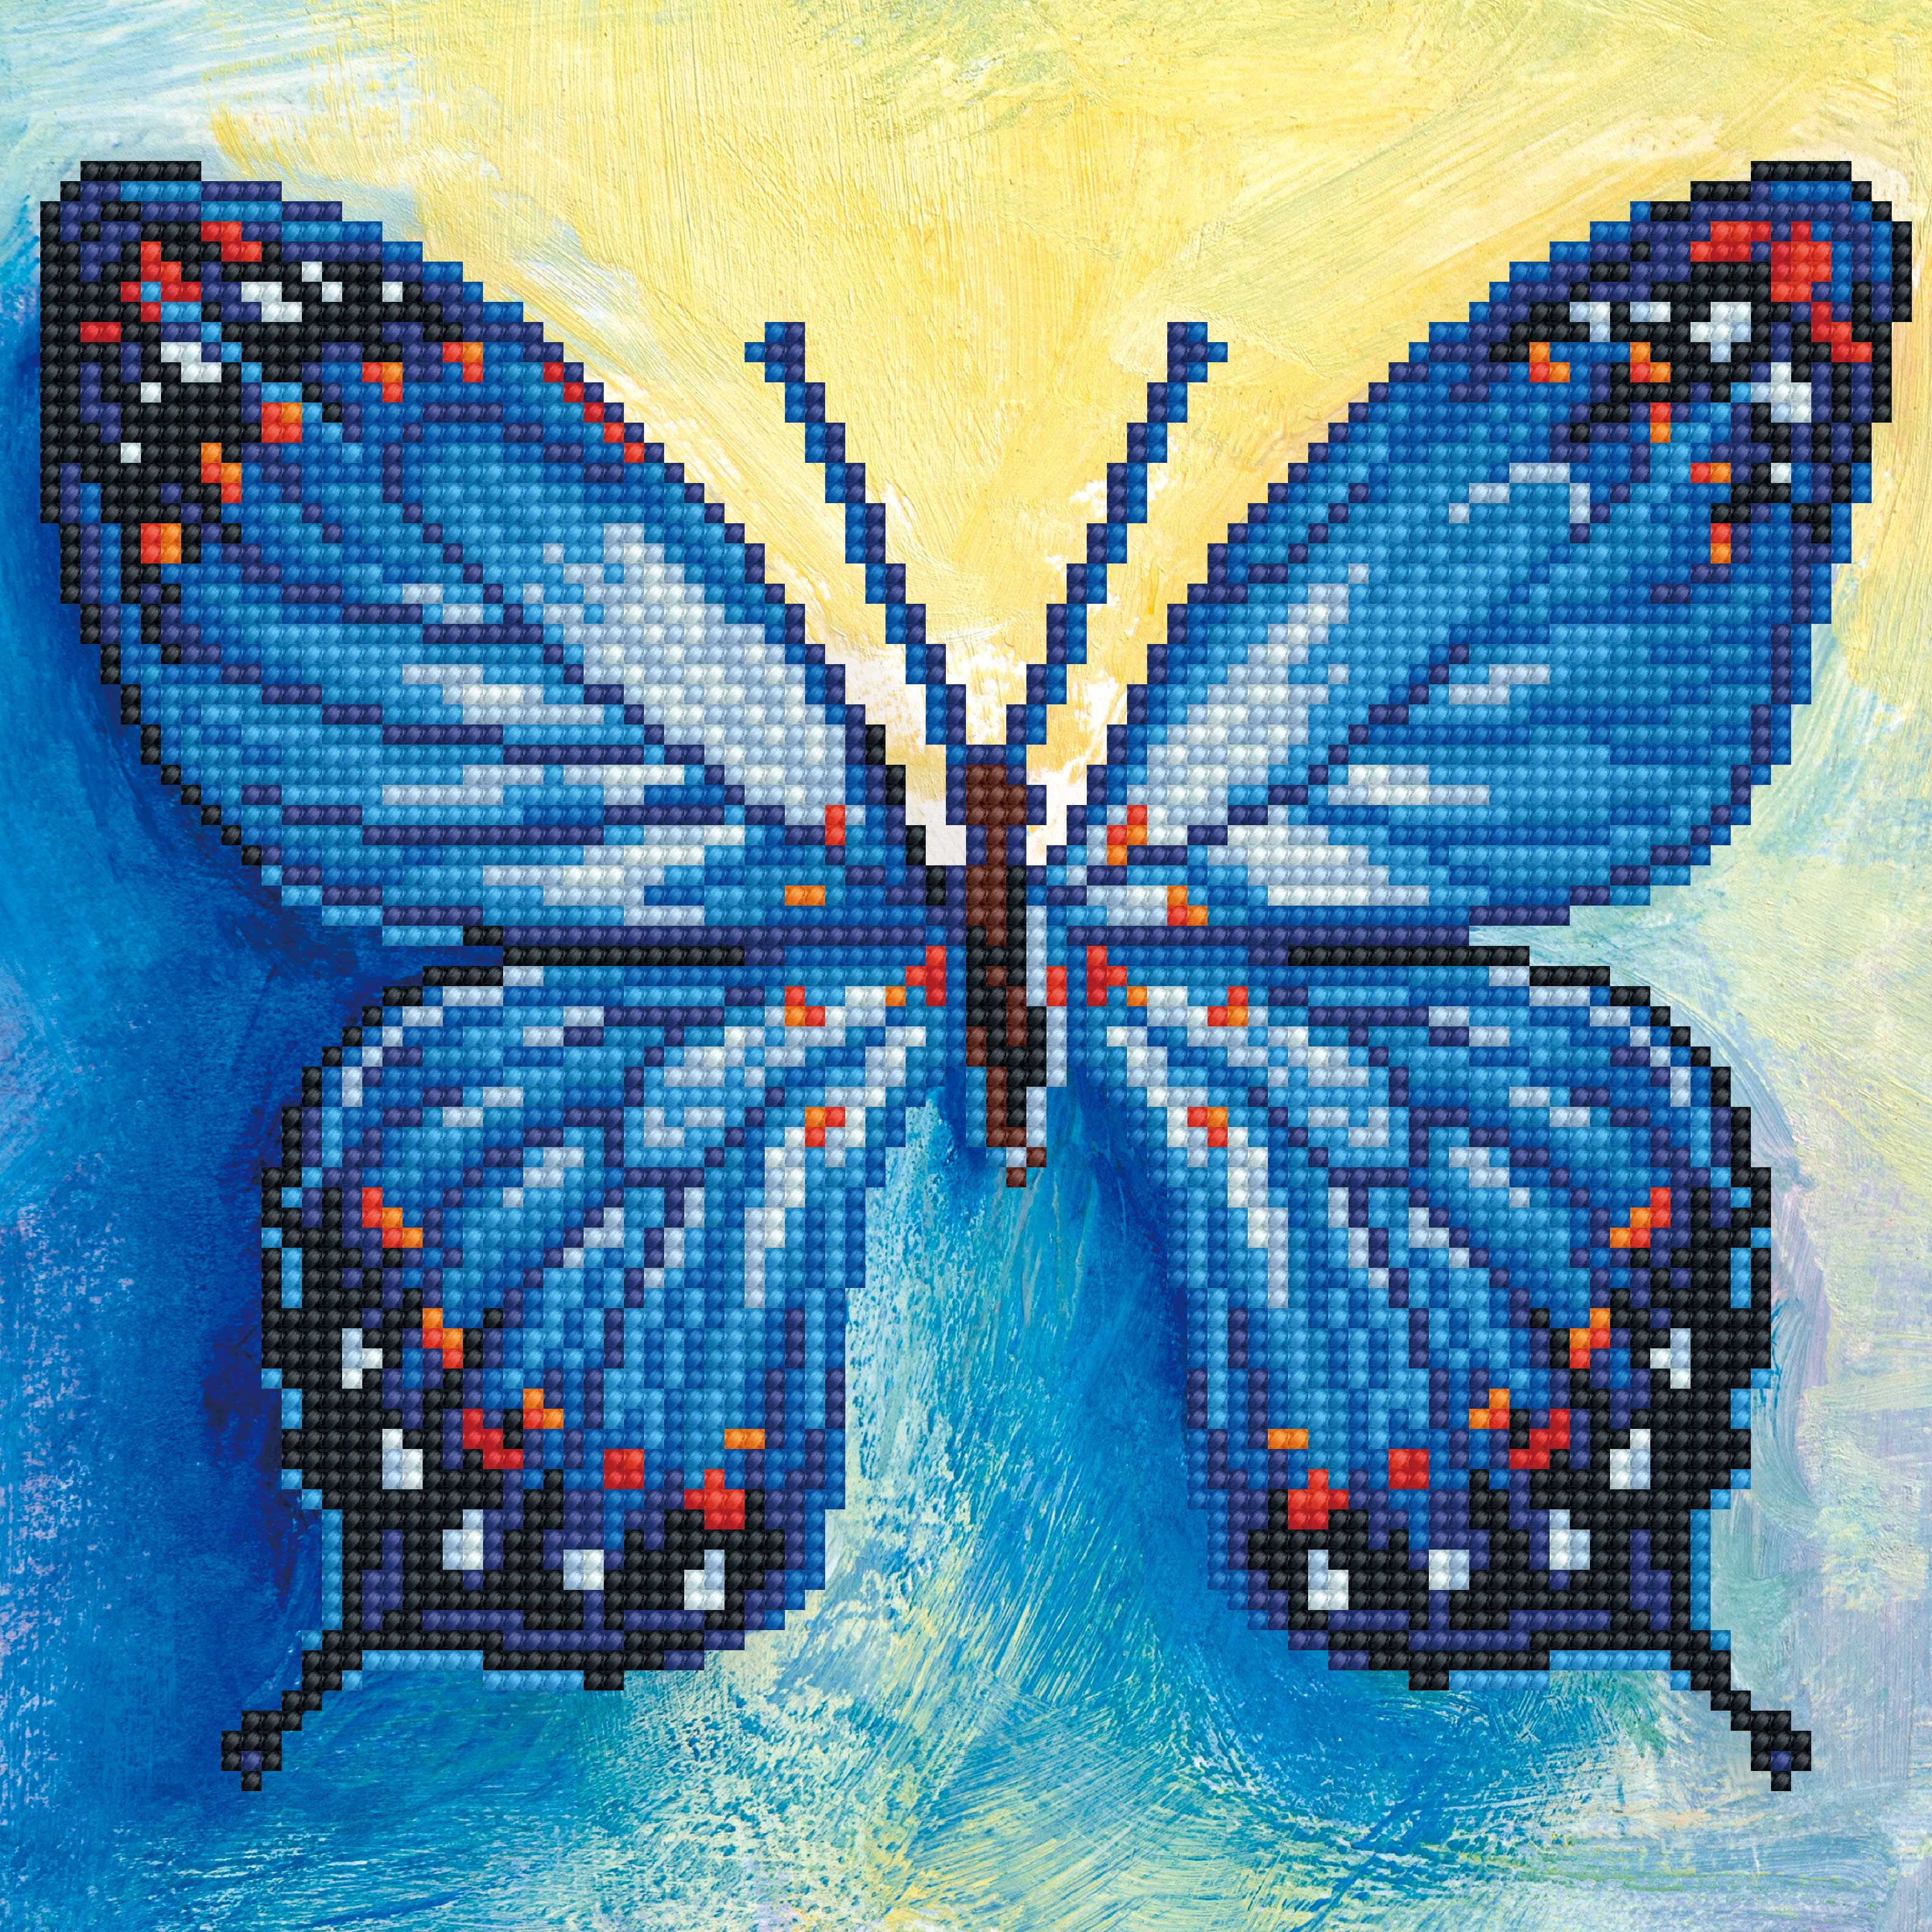 Diamond Art Beginner Blue Butterfly Kit